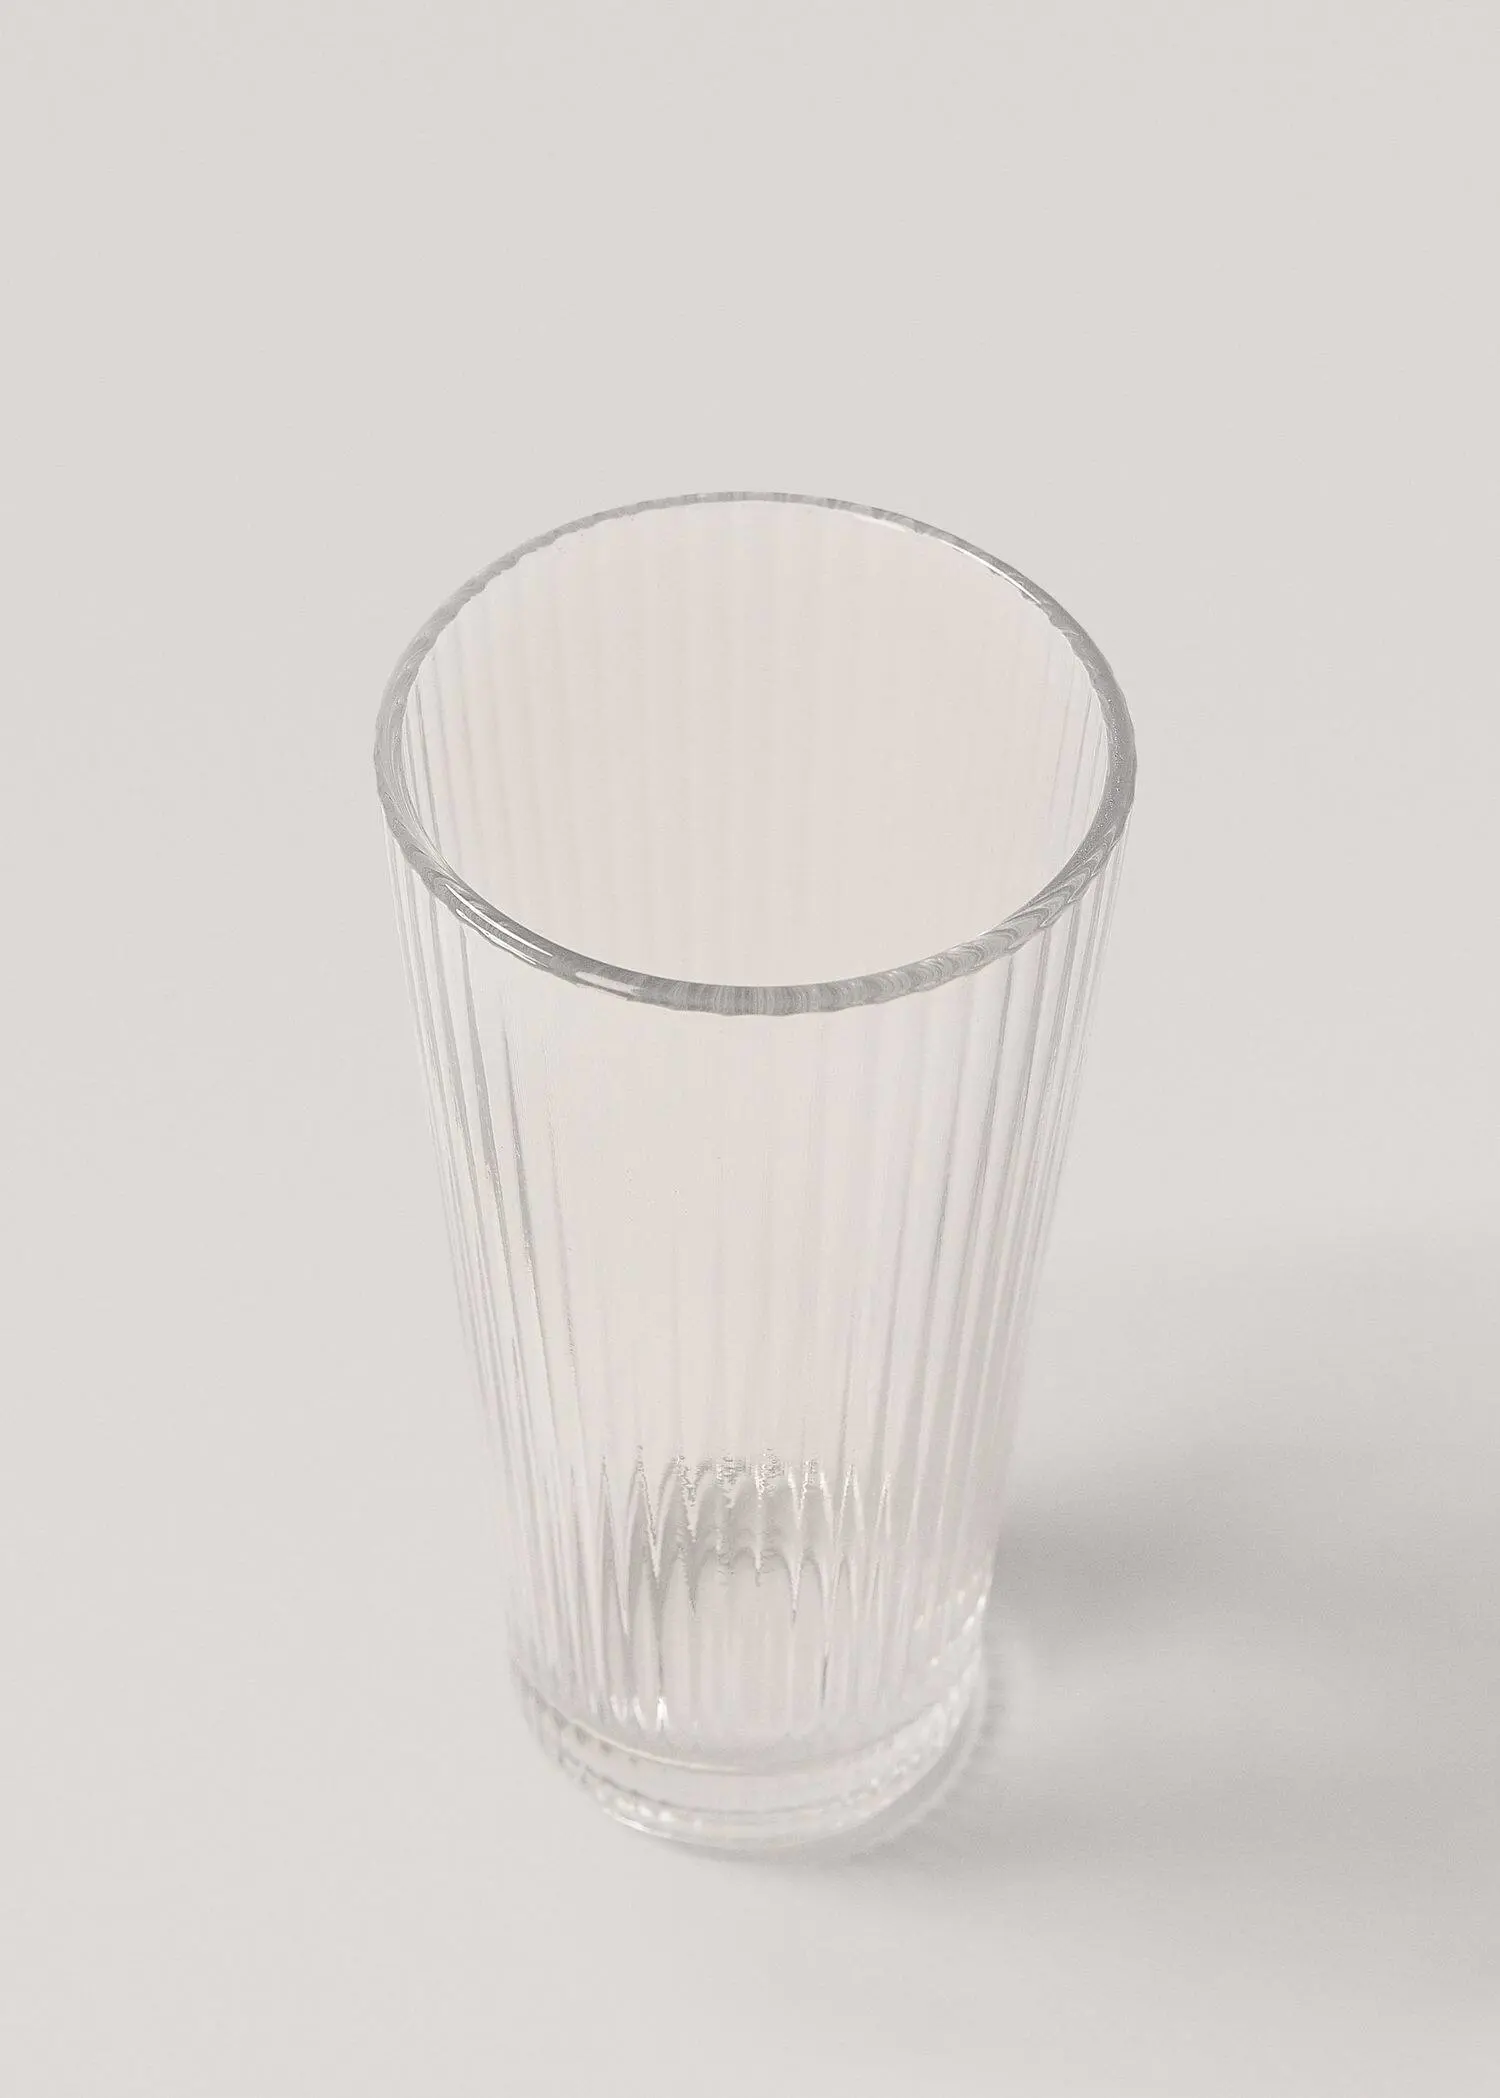 Mango 14 cm transparent glass with stripes. 3